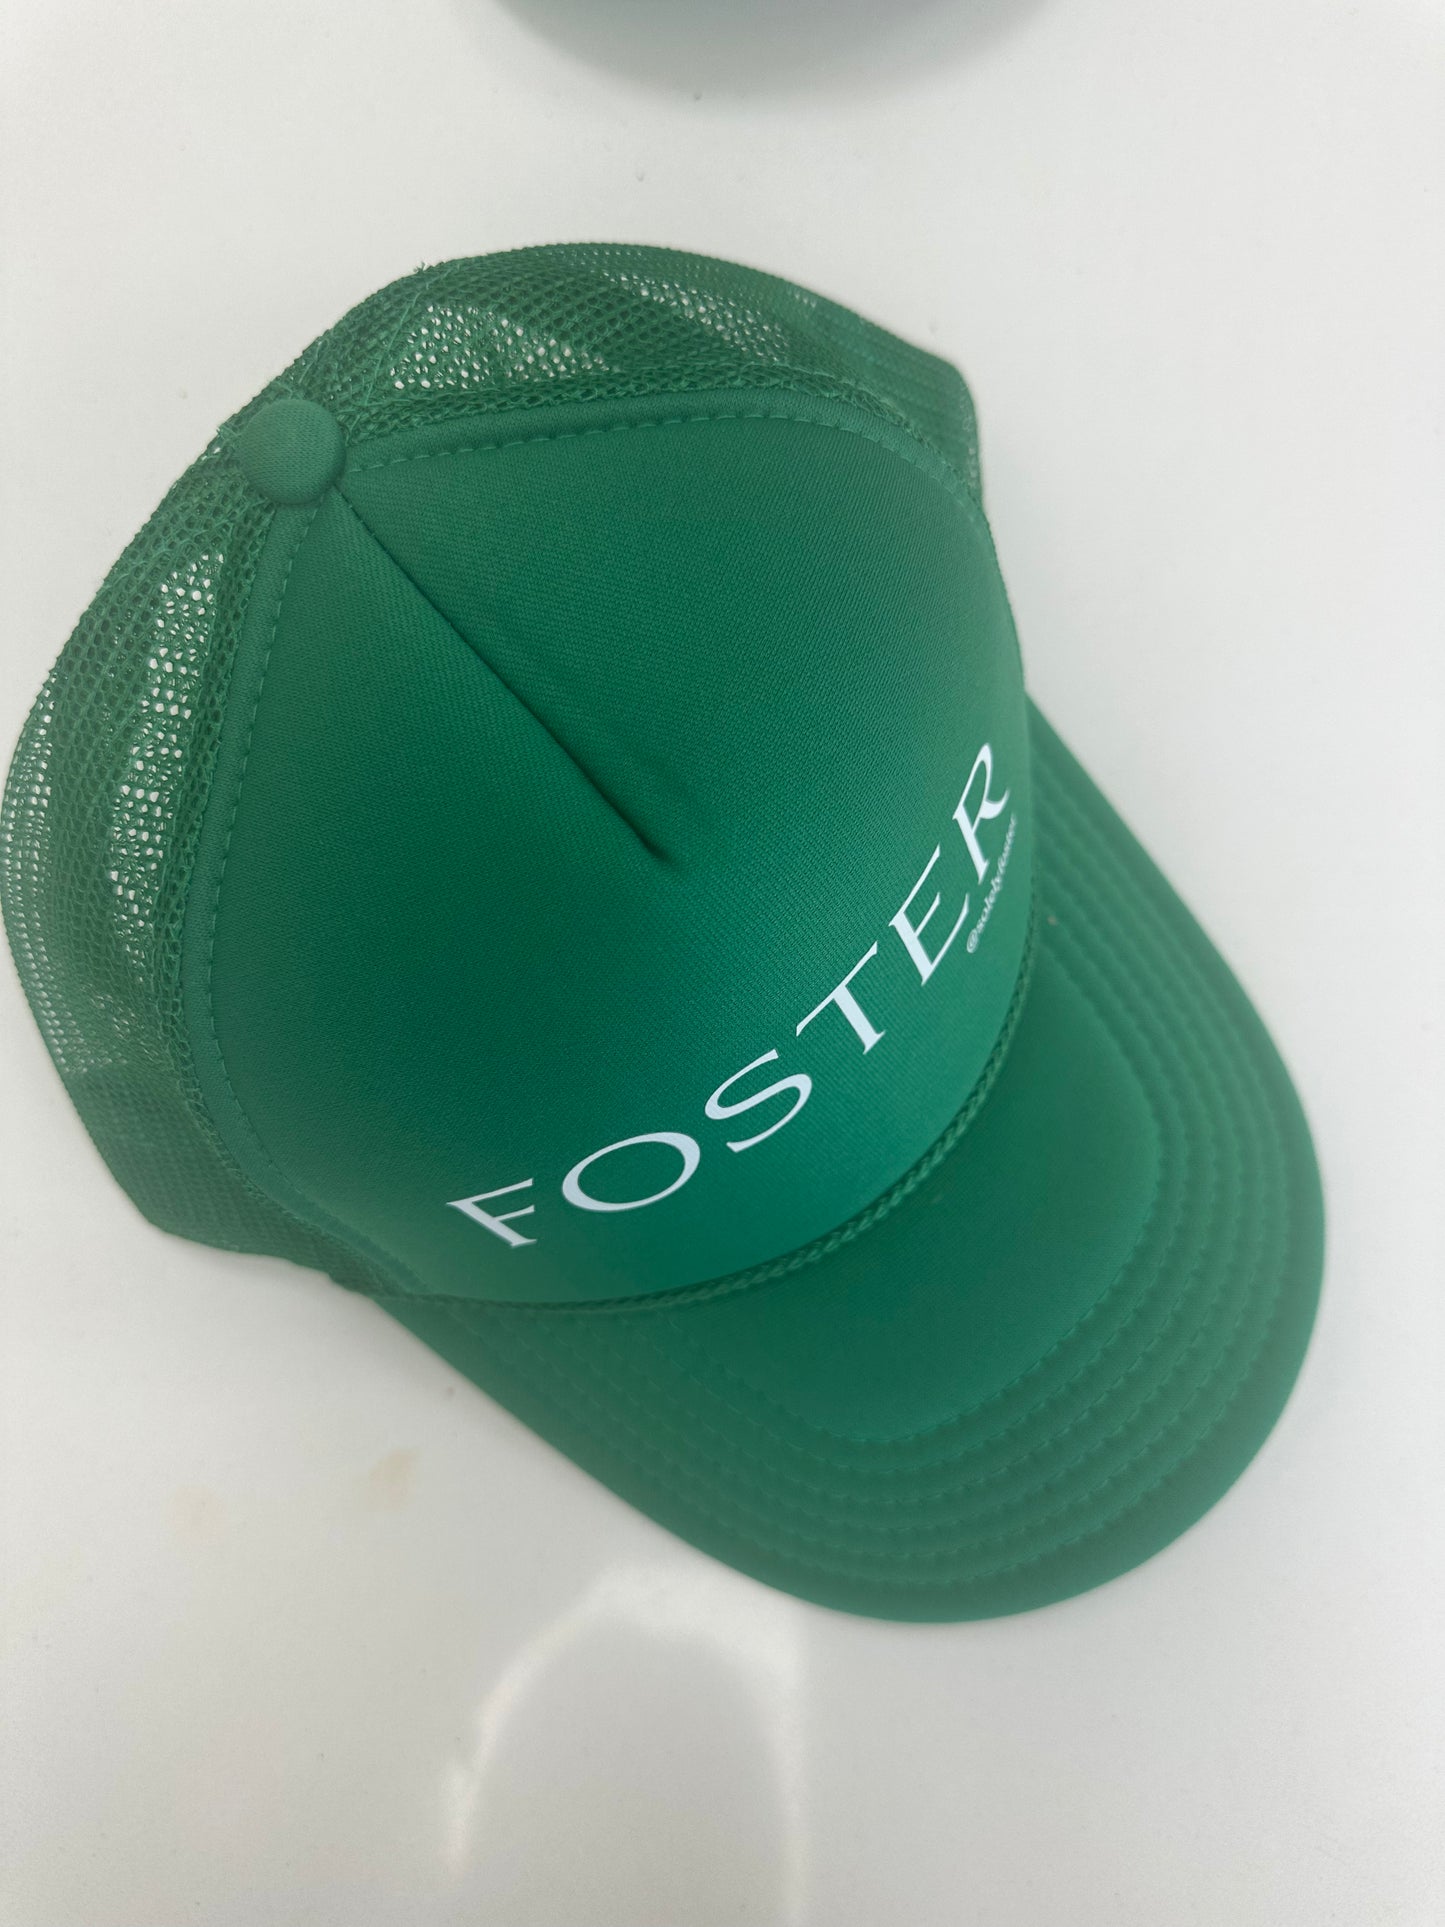 FOSTER Trucker Hat